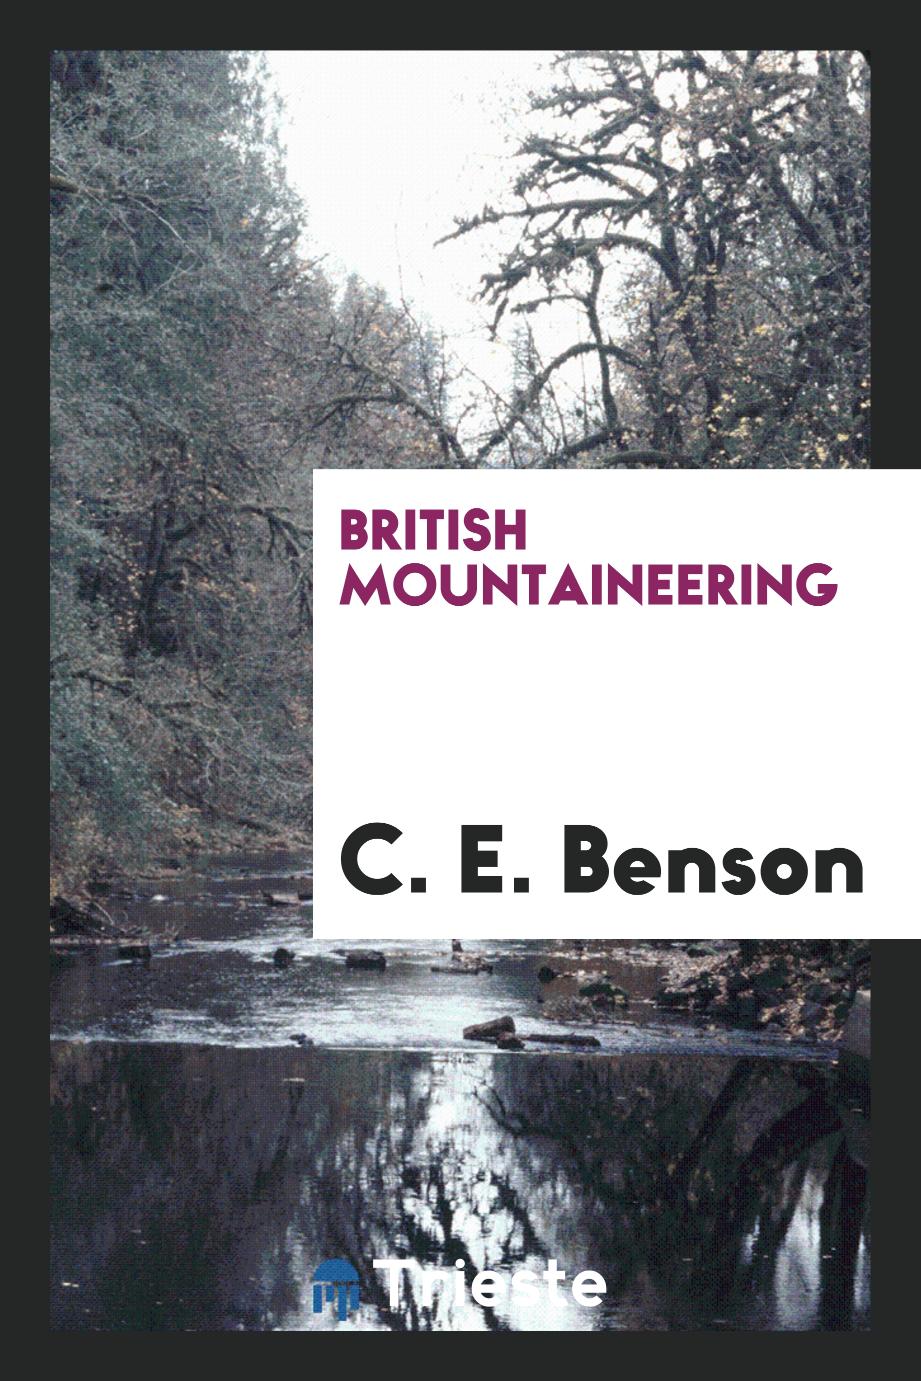 British mountaineering